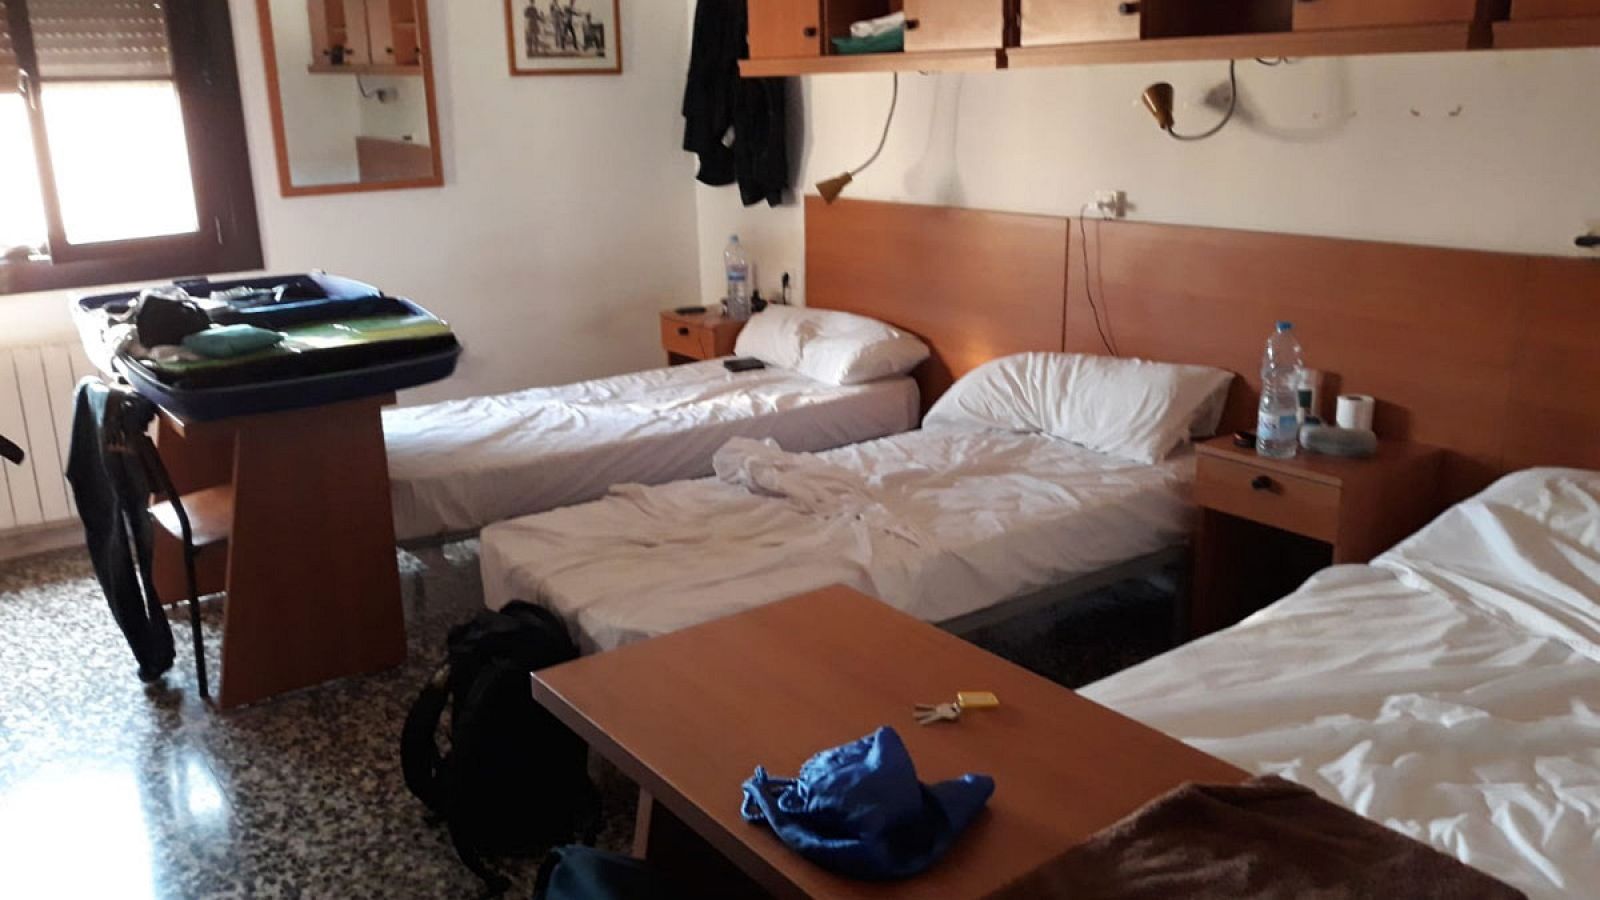 Habitación de tres camas a la que han sido reubicados los agentes de policía desplazados a Cataluña